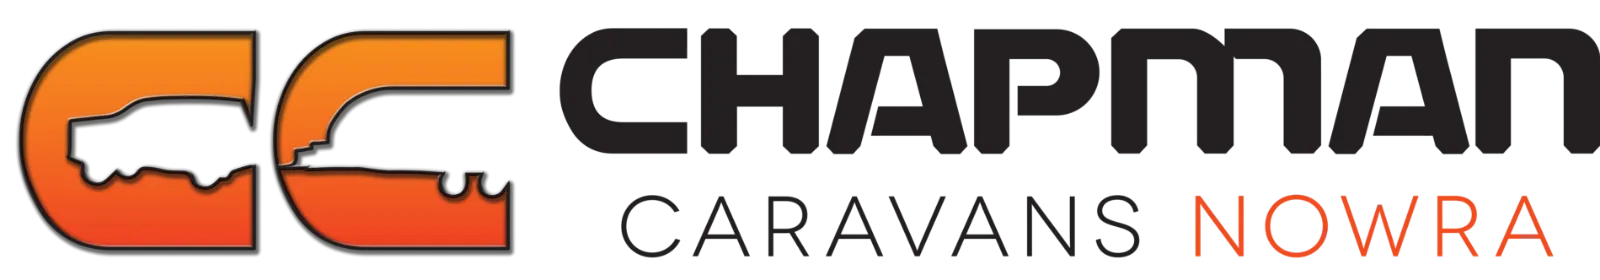 Chapman Caravans Nowra Logo